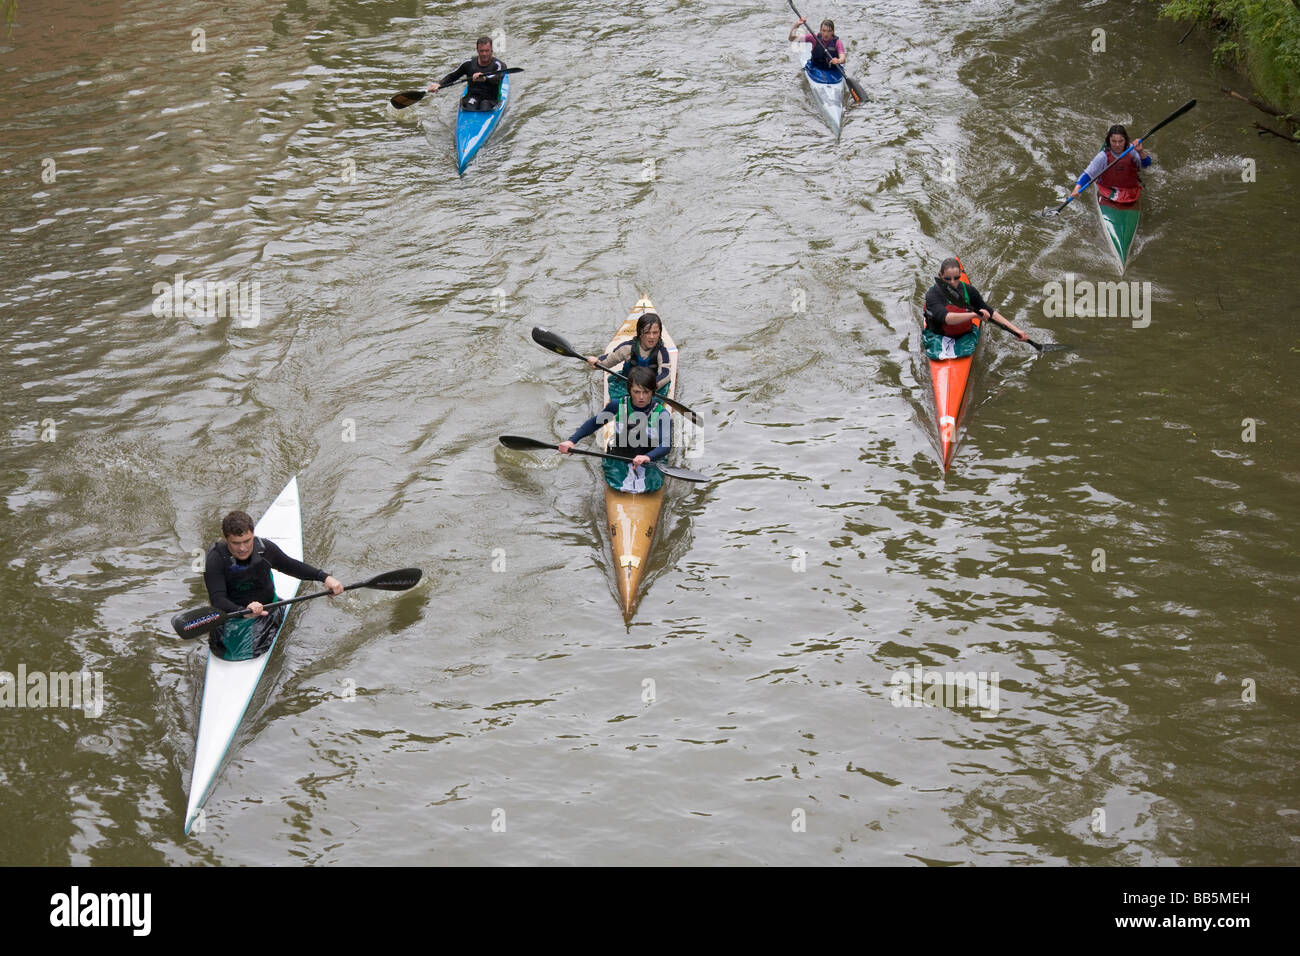 Un groupe de kayaks sur la rivière Leam dans Warwickshire, Royaume-Uni Banque D'Images